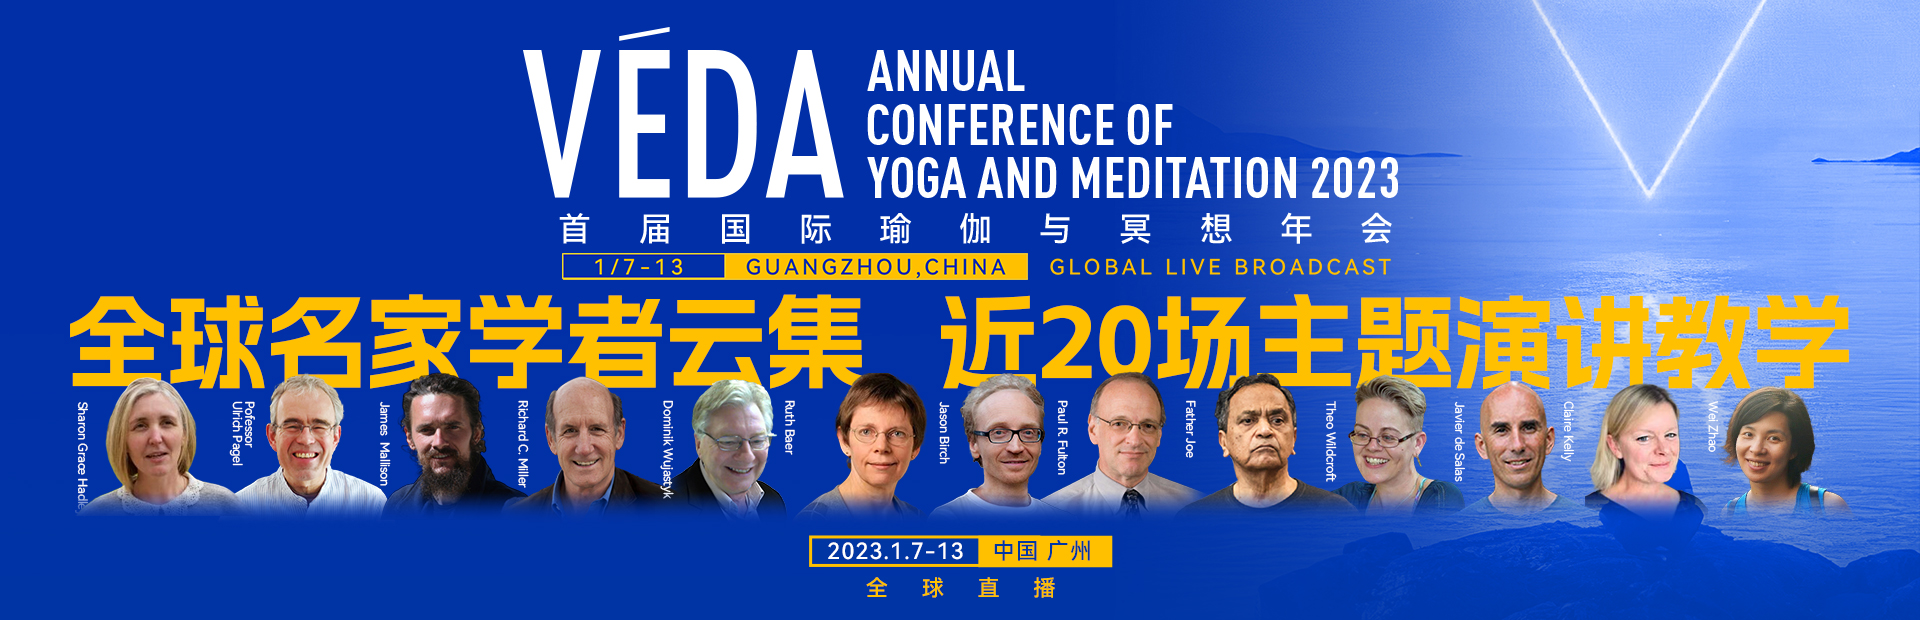 VEDA瑜伽与冥想教育年会